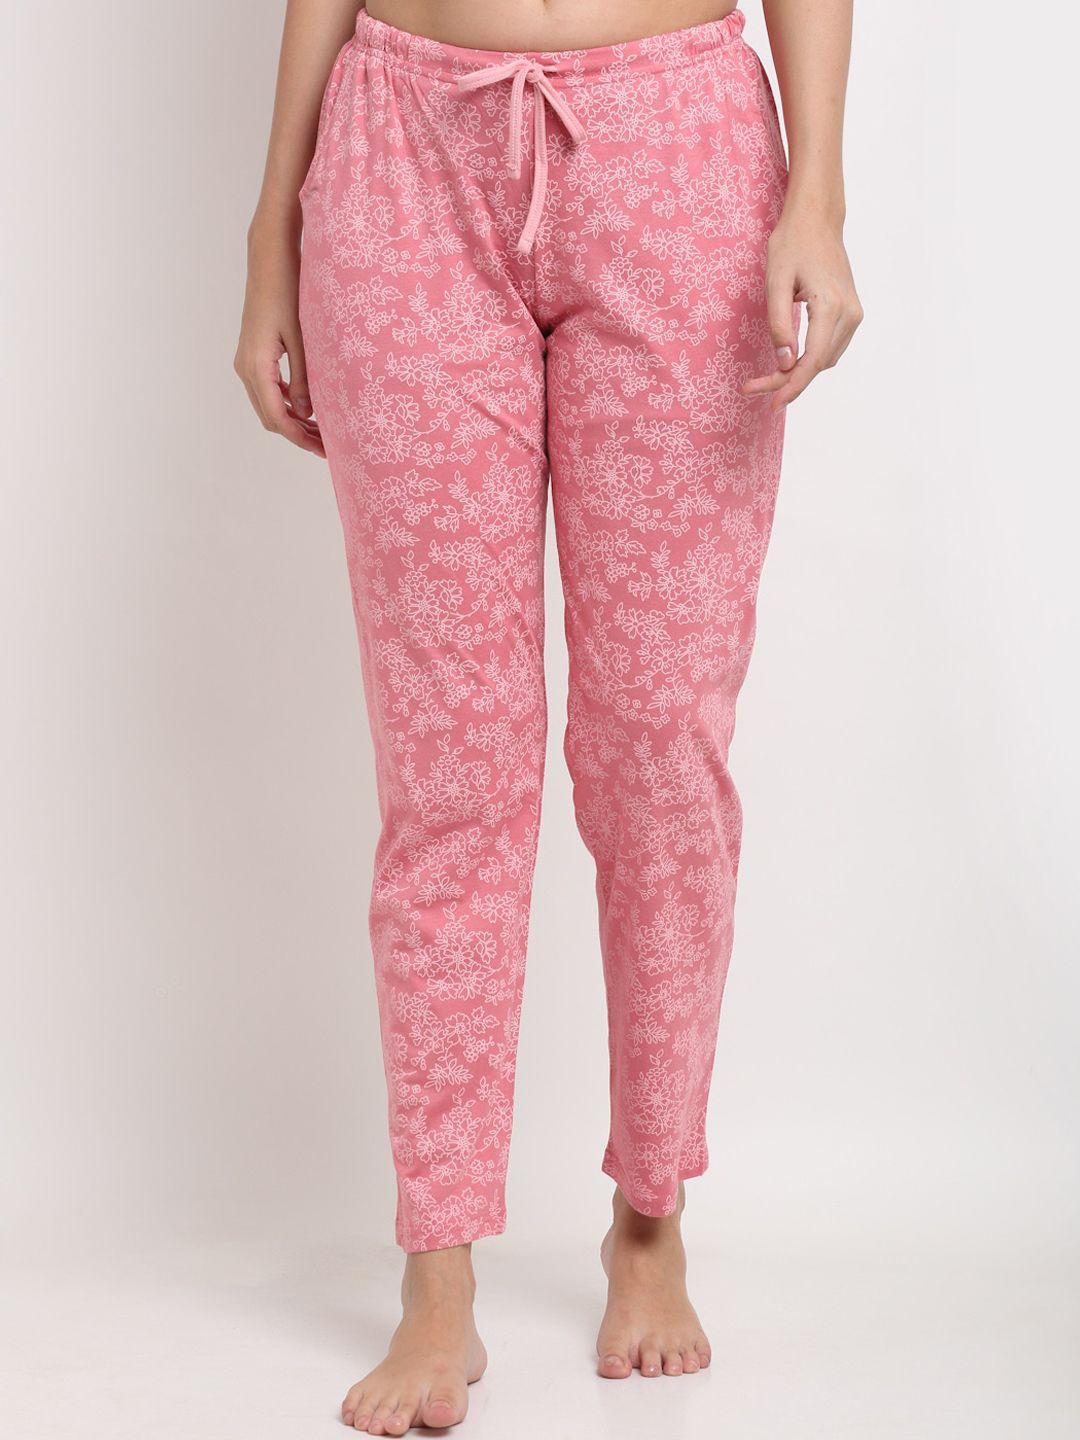 kanvin women pink printed lounge pants